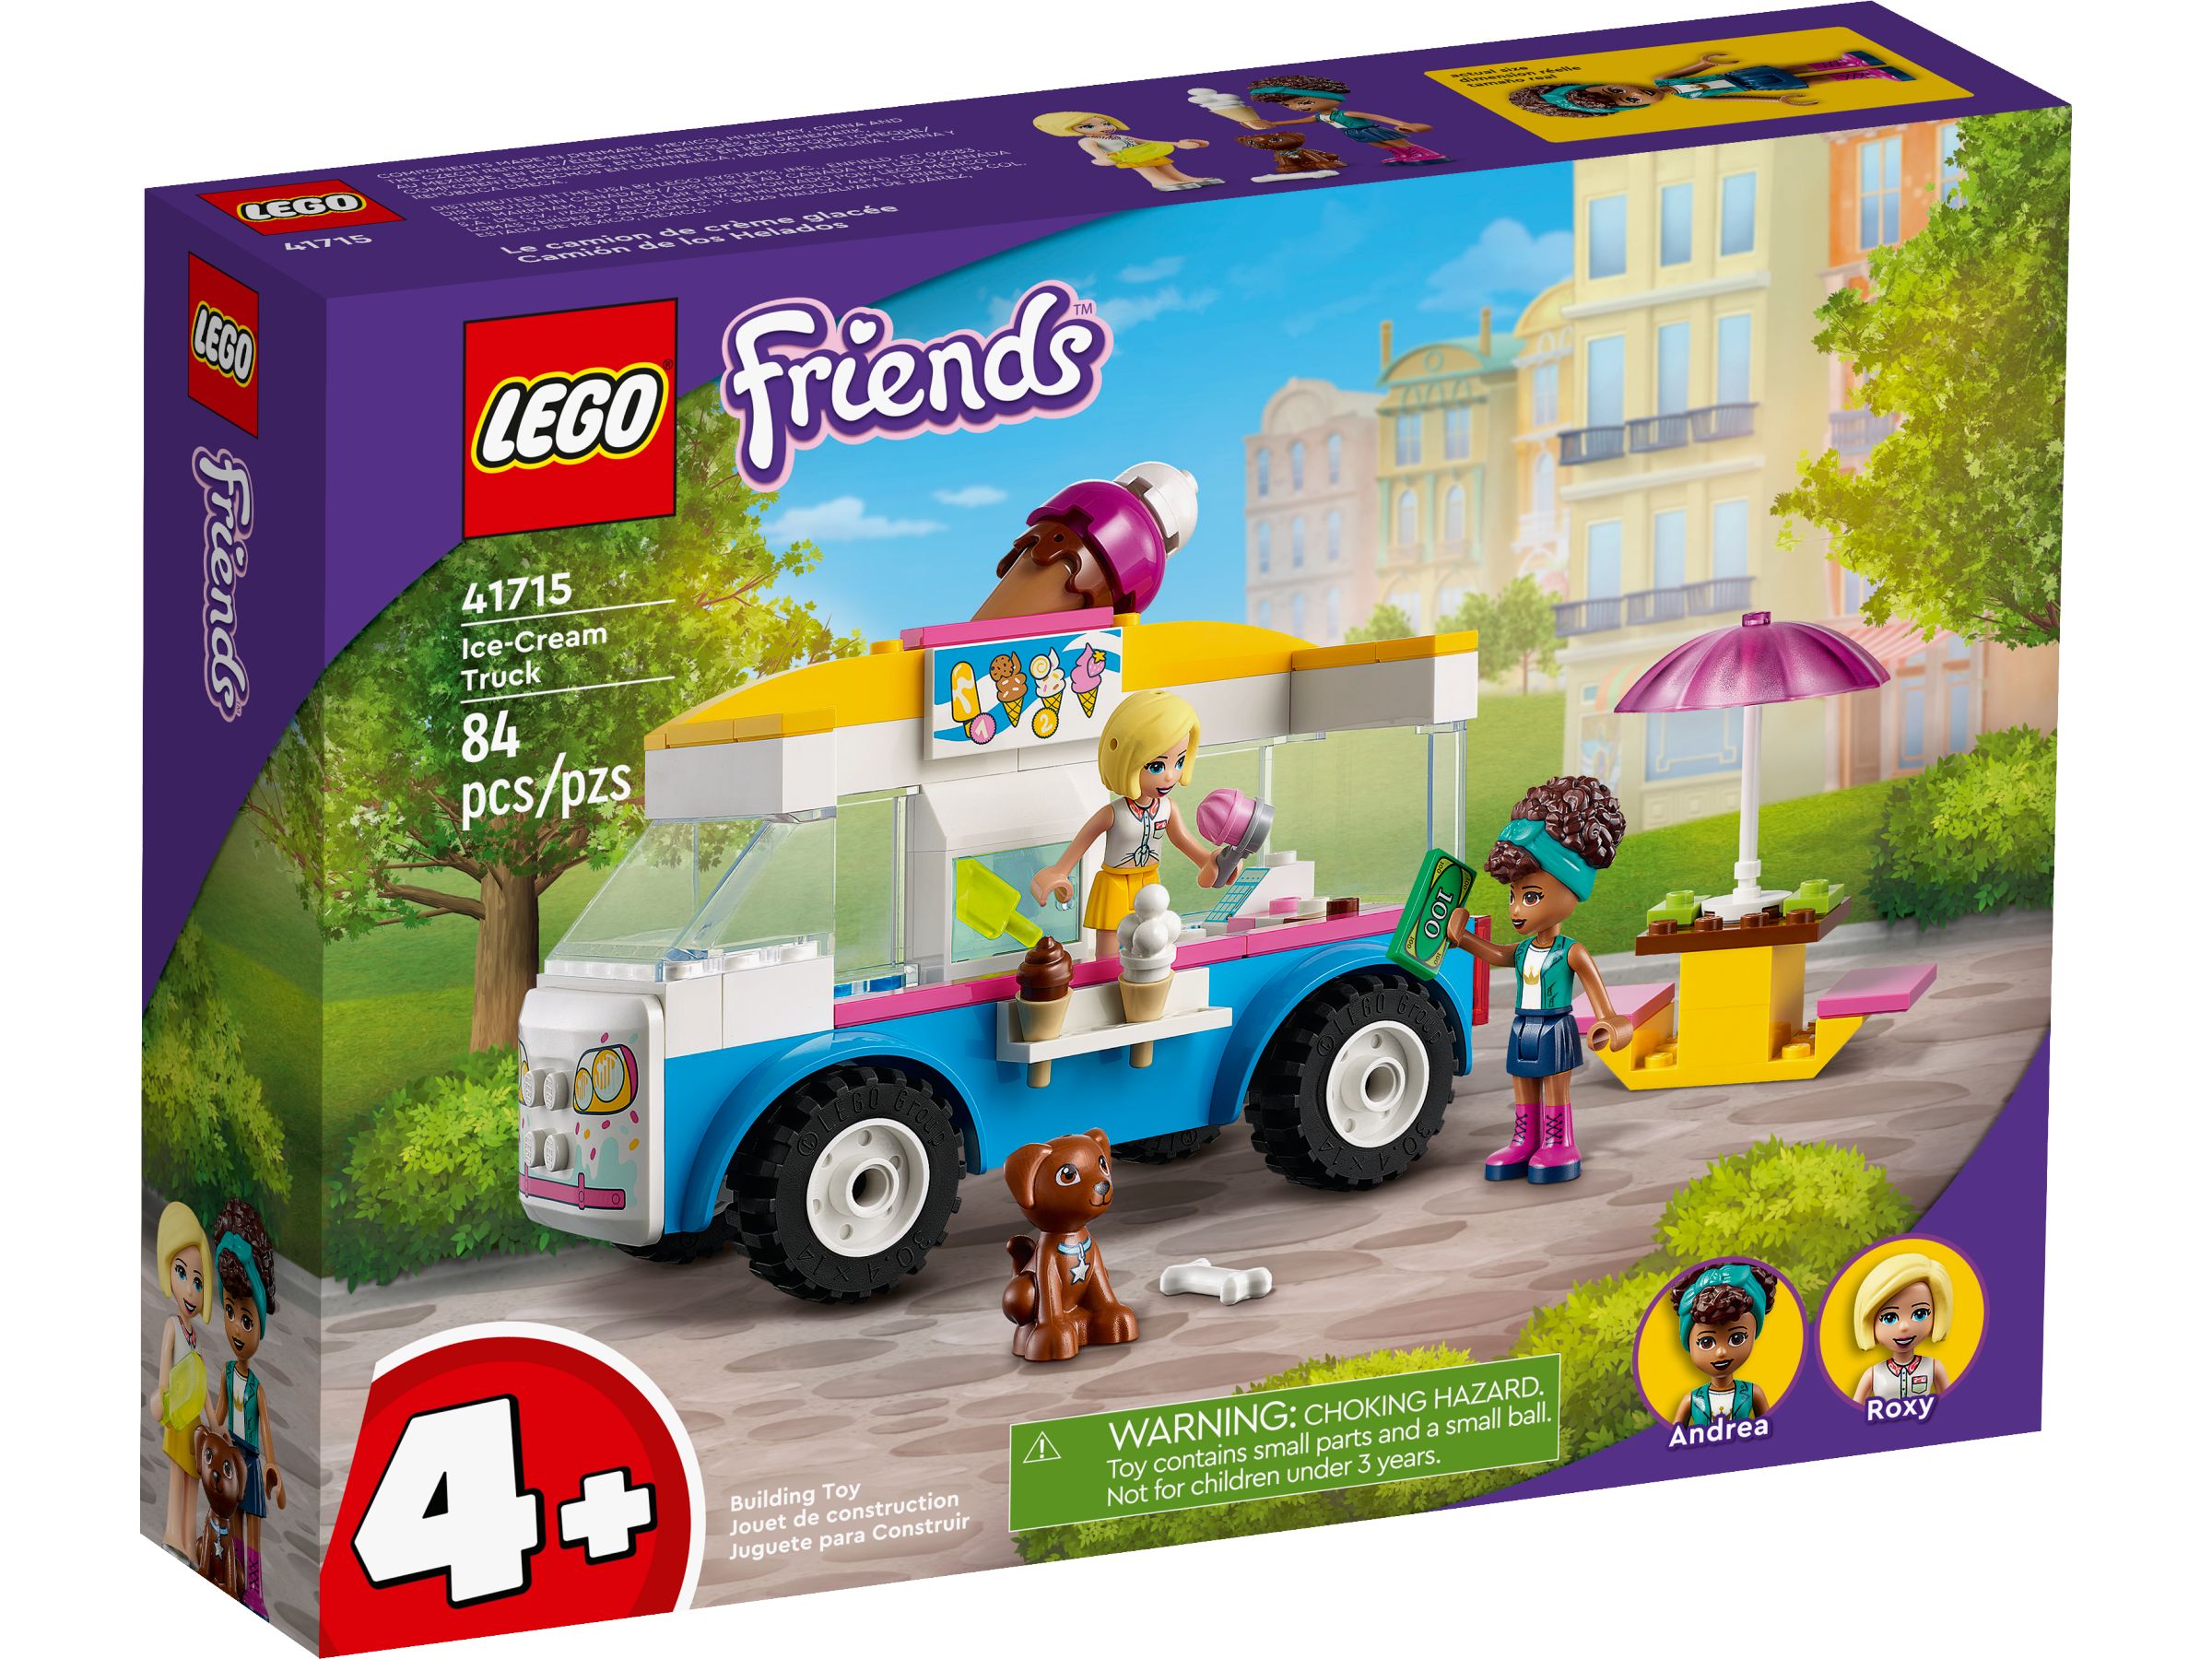 LEGO Friends 41715 Eiswagen LEGO_41715_alt1.jpg